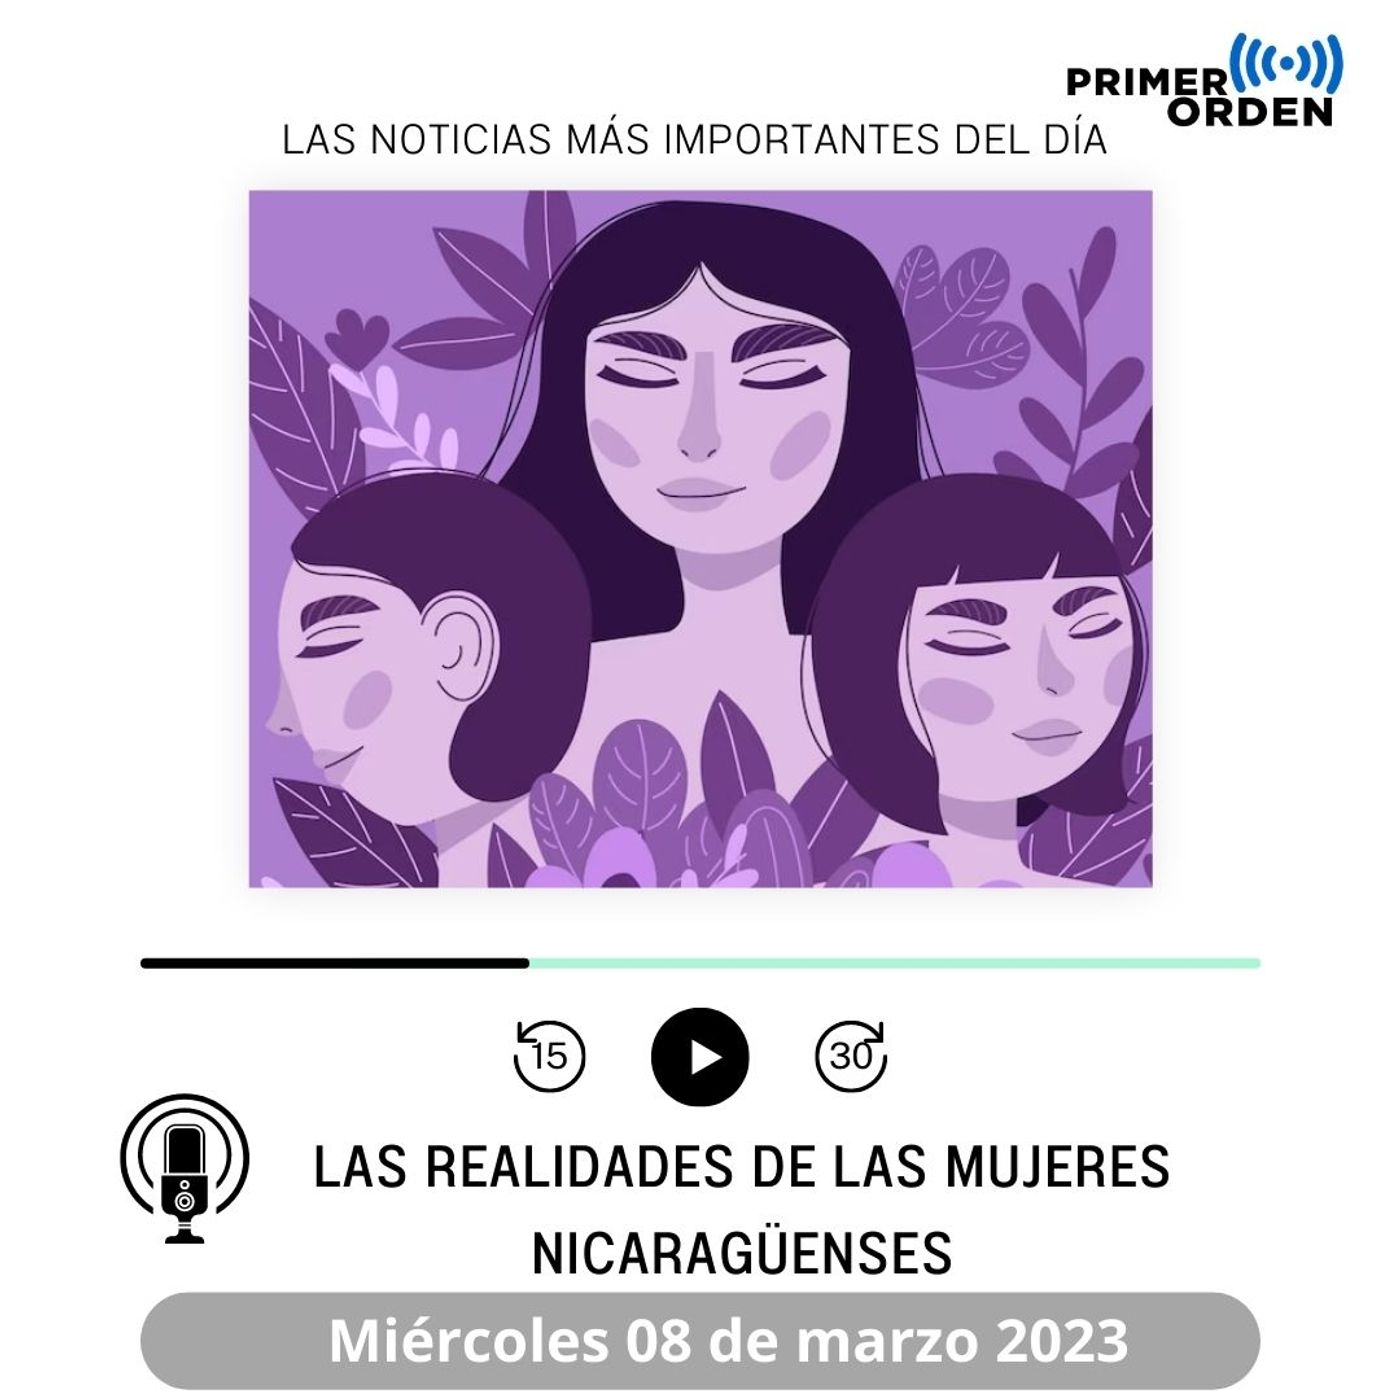 Las realidades de las mujeres nicaraguenses